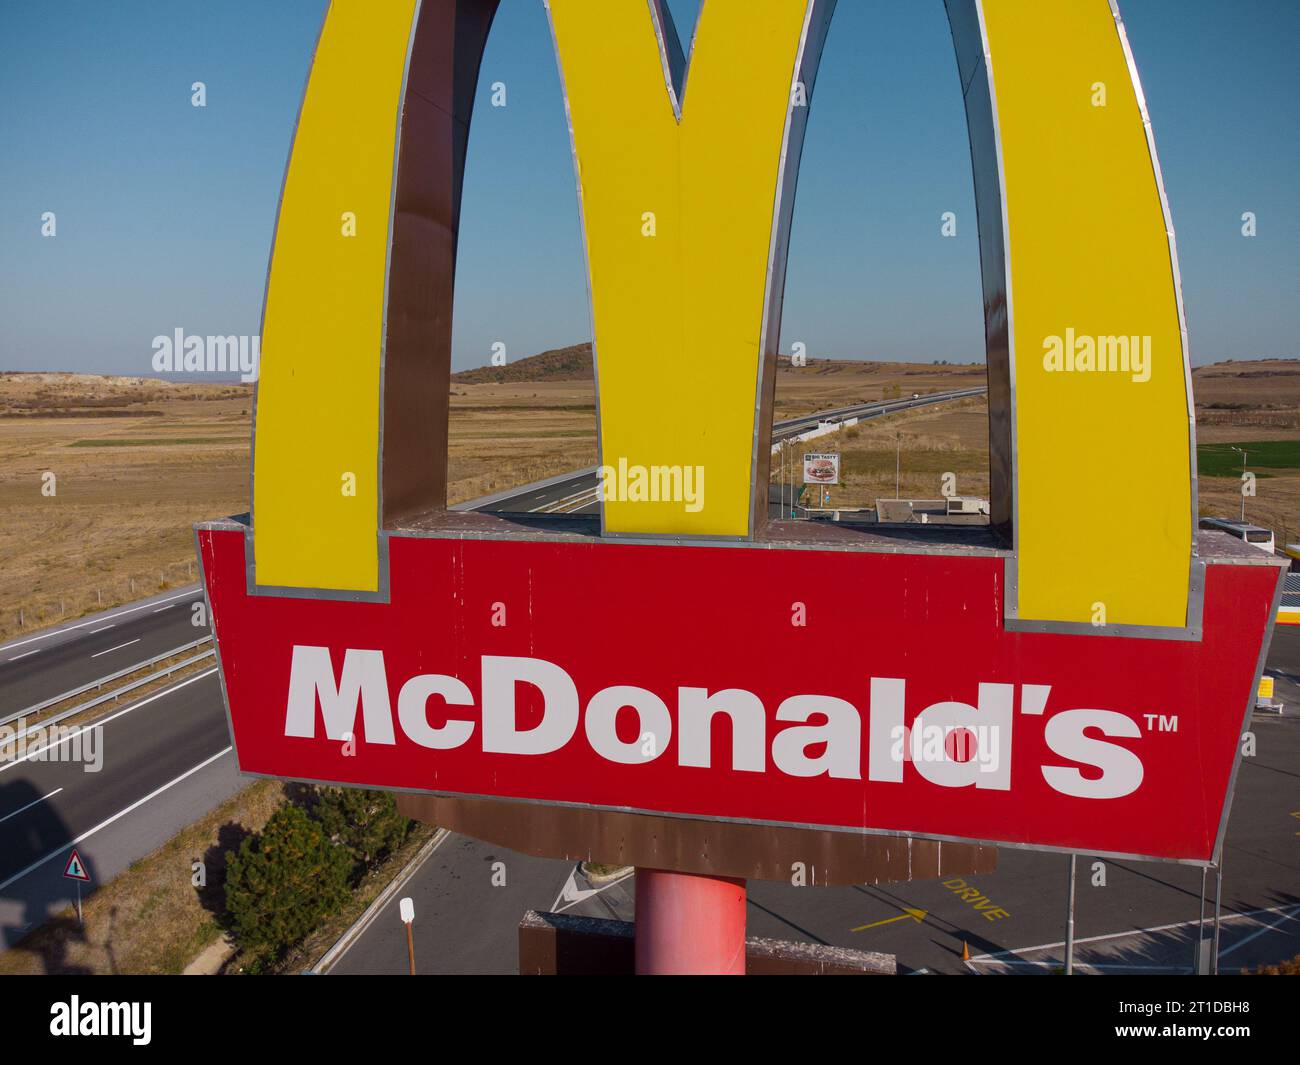 Drazhevo - 1 novembre 2022, McDonald's McDrive signe à la station de gaz Shell sur une autoroute dans la soirée vue aérienne le 1 novembre Drazhevo Bulgarie Banque D'Images